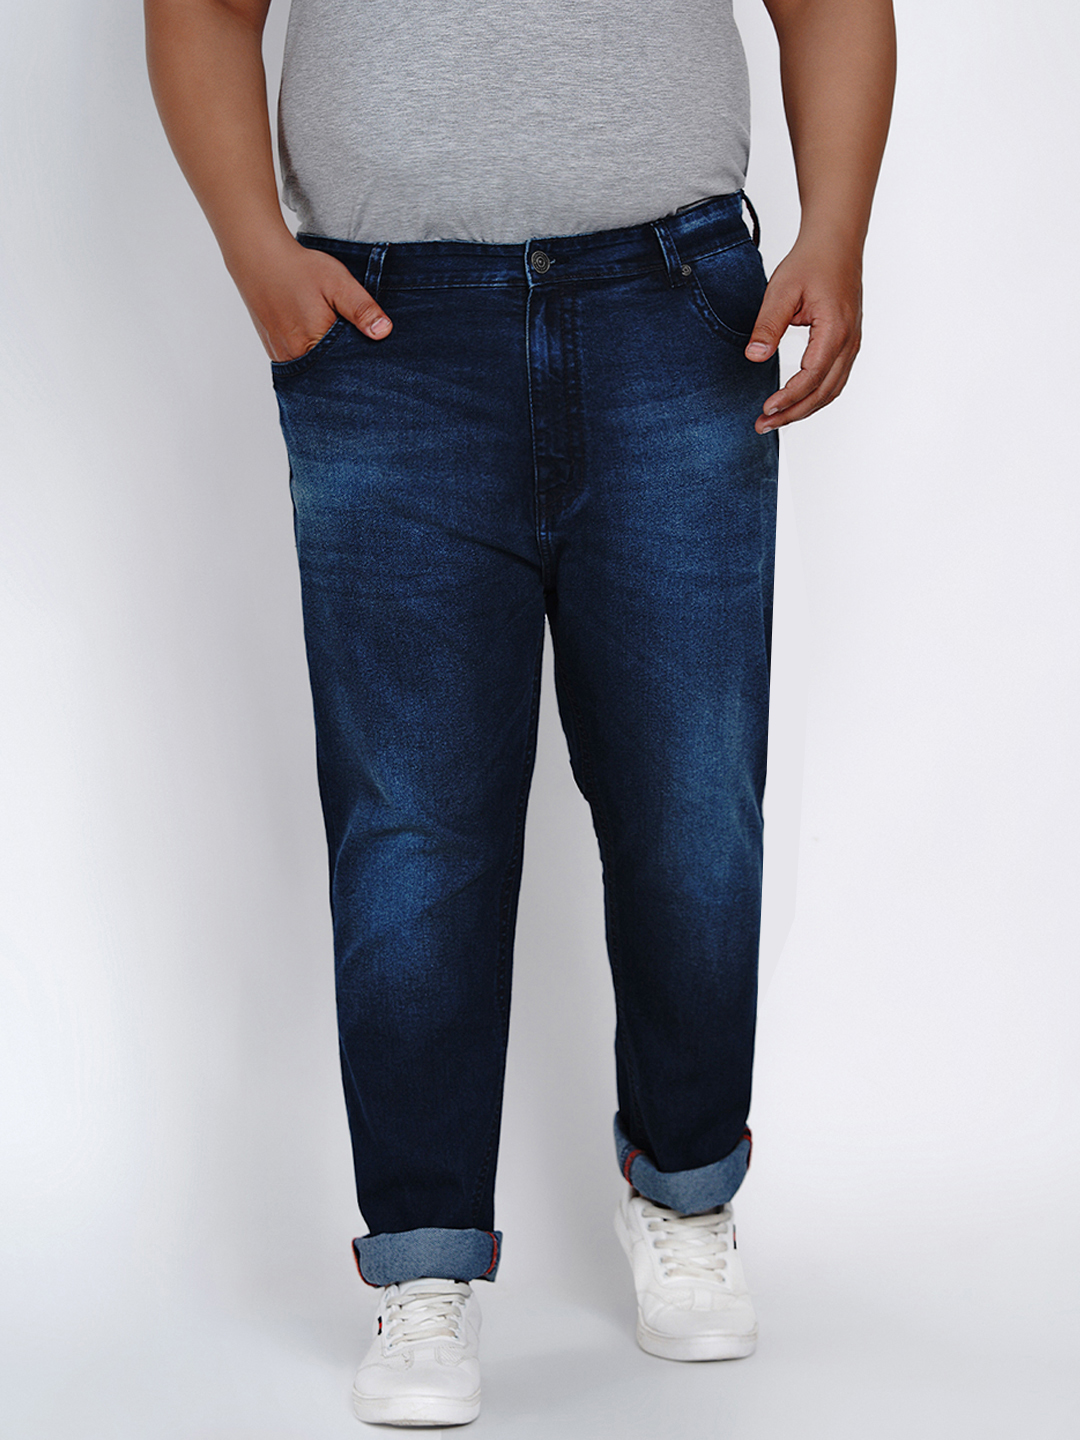 affordables/jeans/JPJ2014/jpj2014-2.jpg